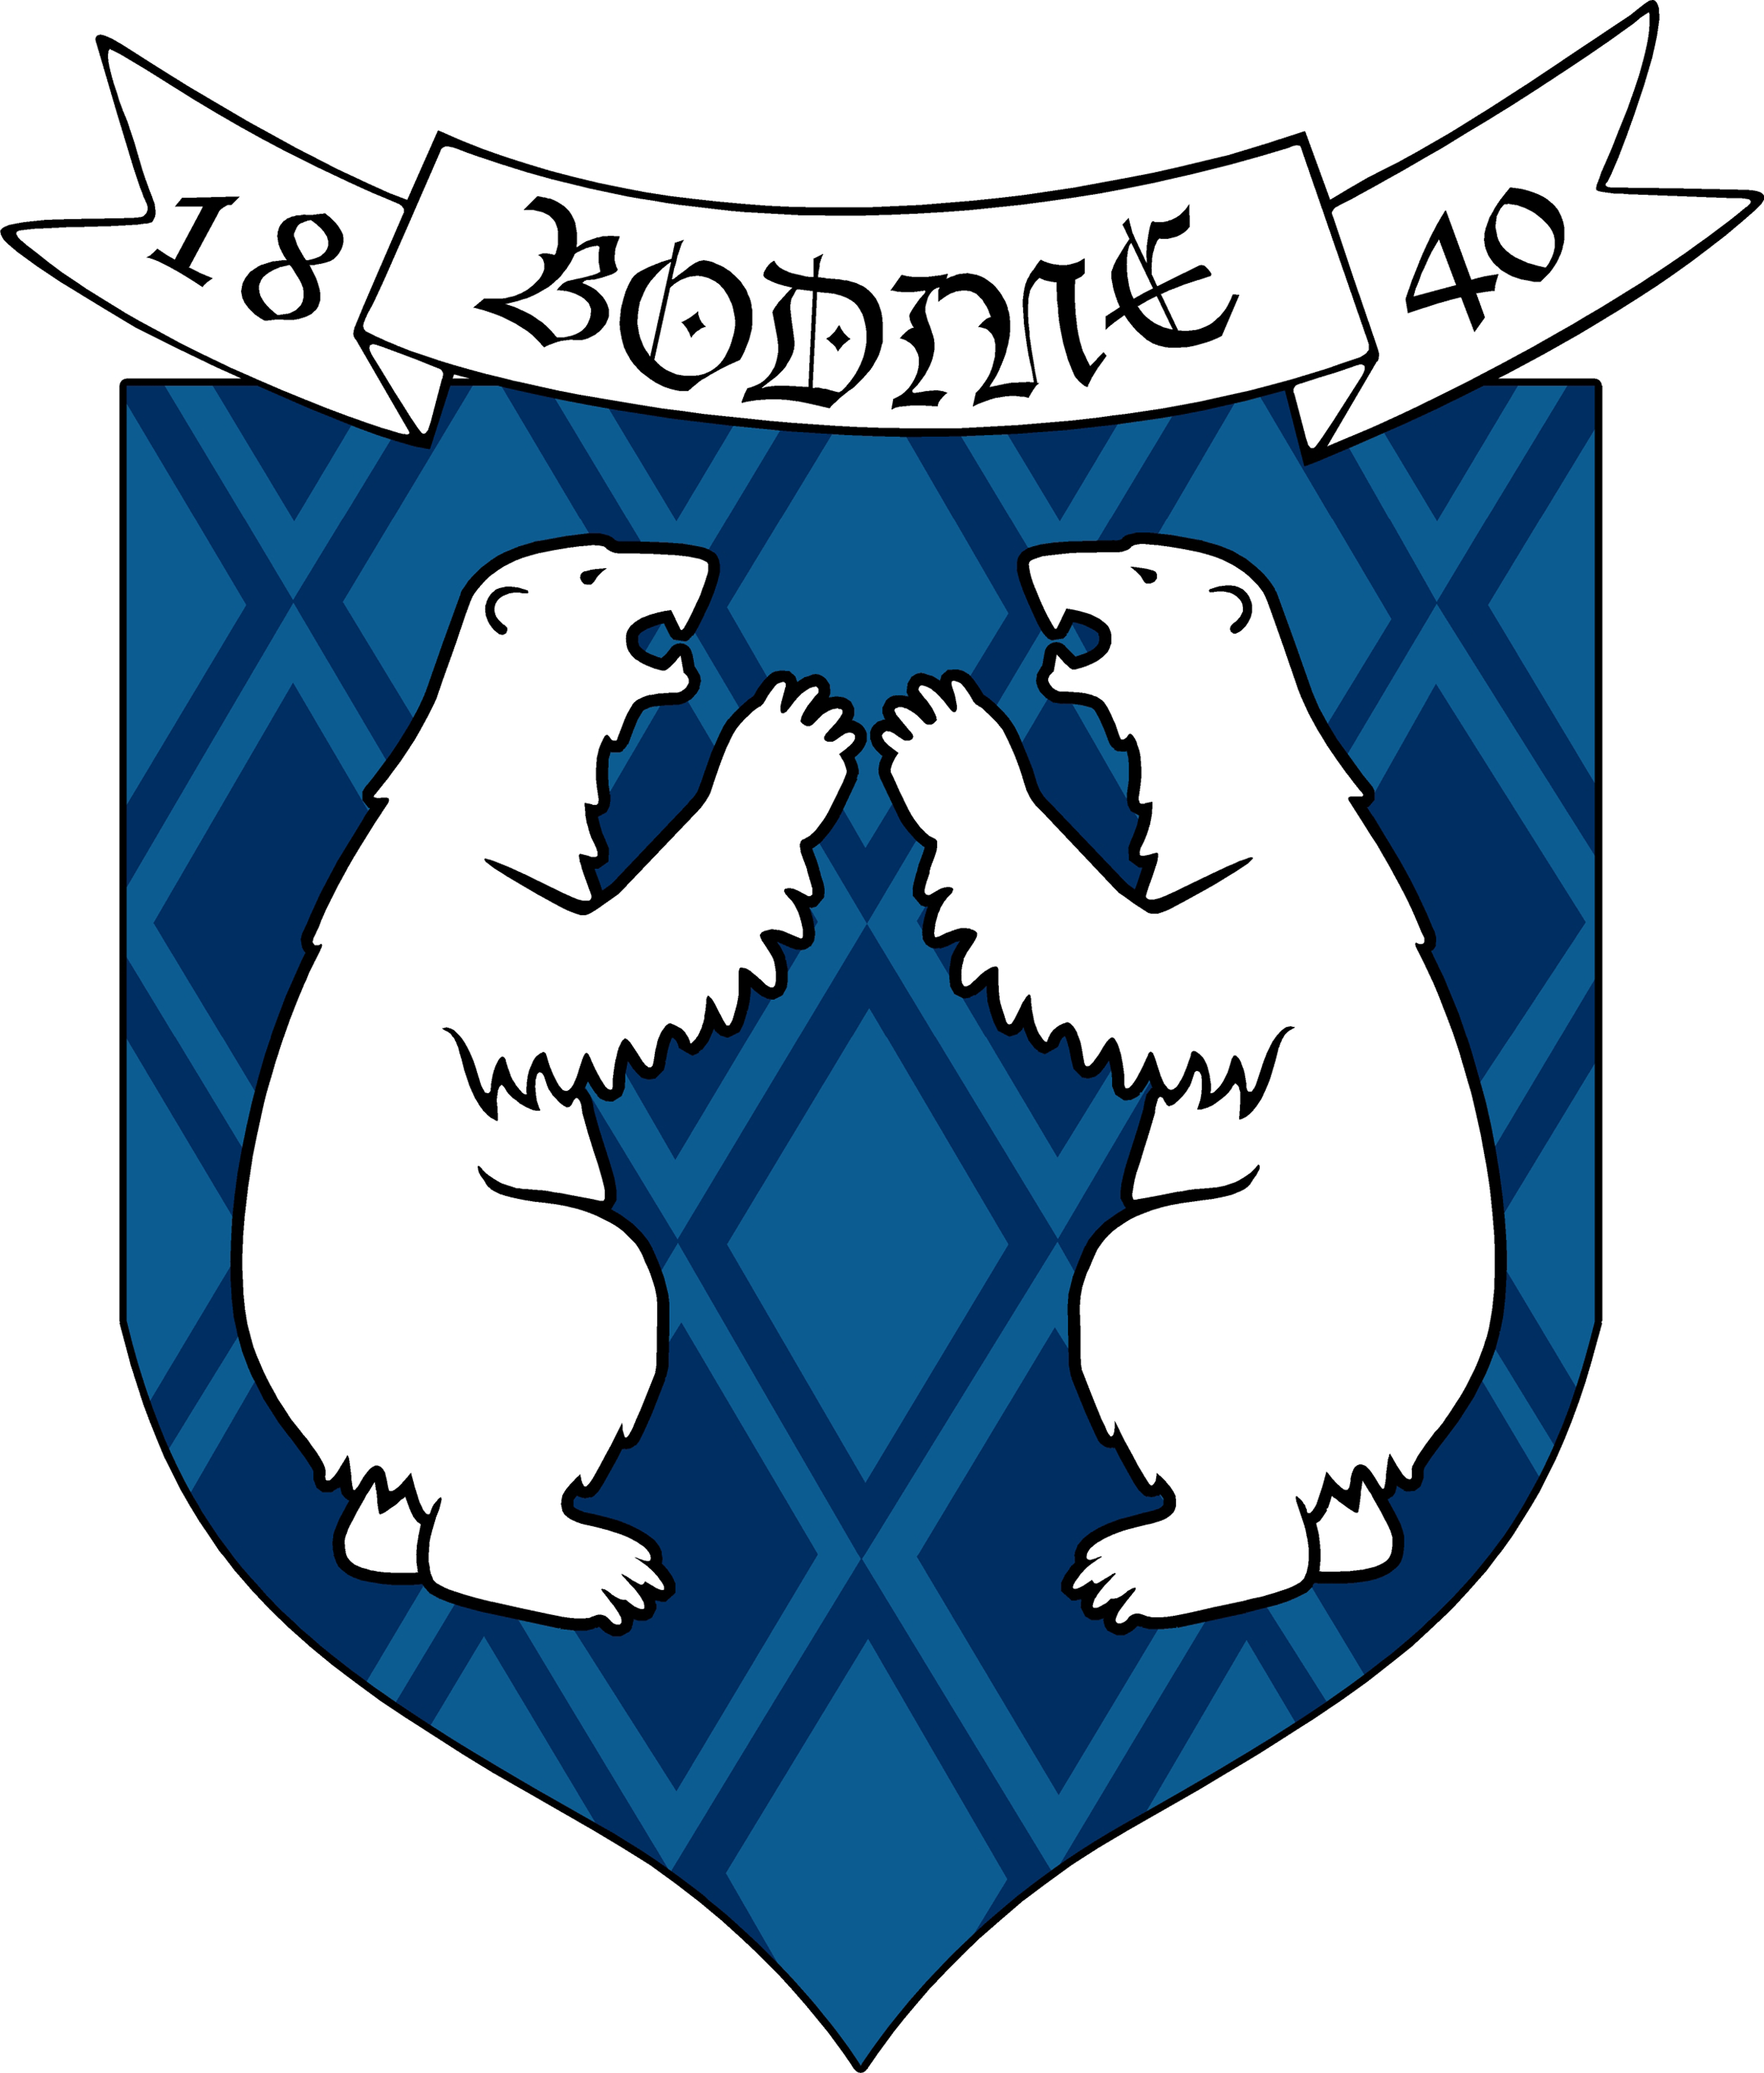 Bodine College Crest